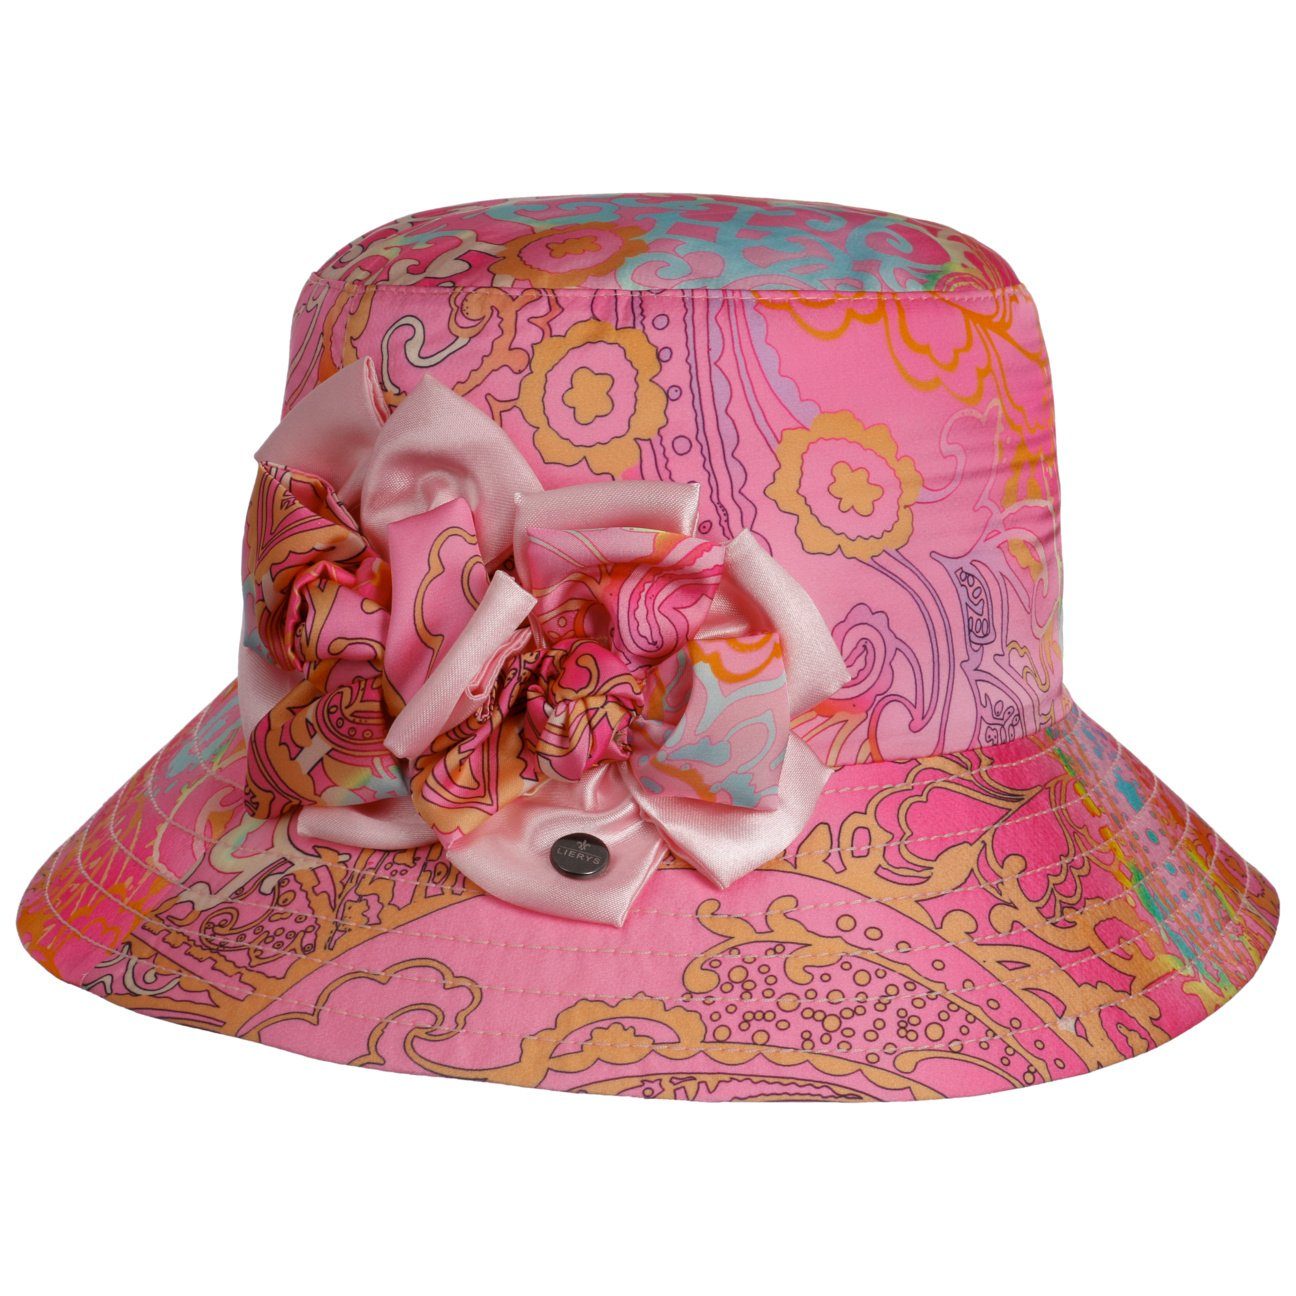 Rosa Fischerhüte online kaufen » Pinke Anglerhüte | OTTO